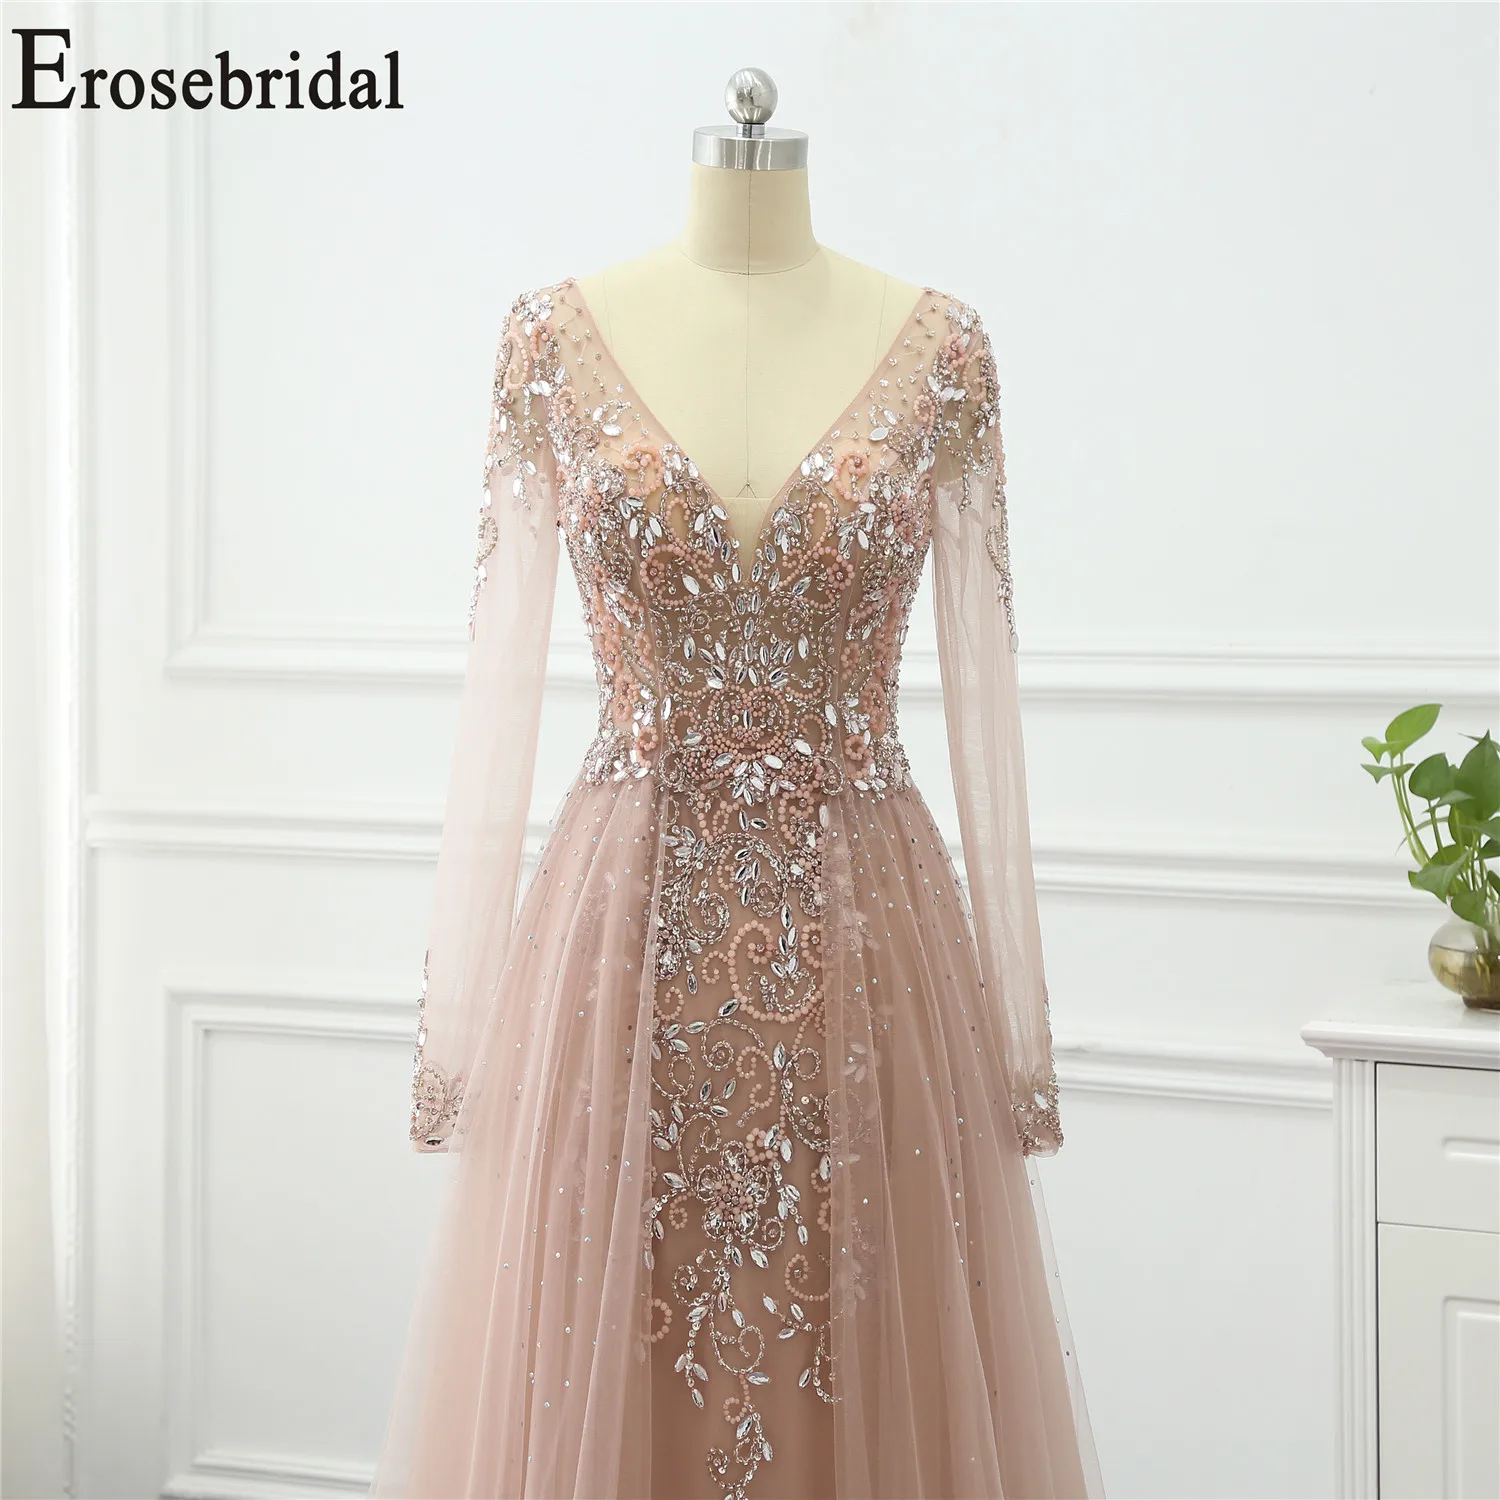 Günstige Erosebridal Perlen Elegante Abendkleid Lange 2019 Langarm Formale Kleider Abendkleider für Frauen mit Zug